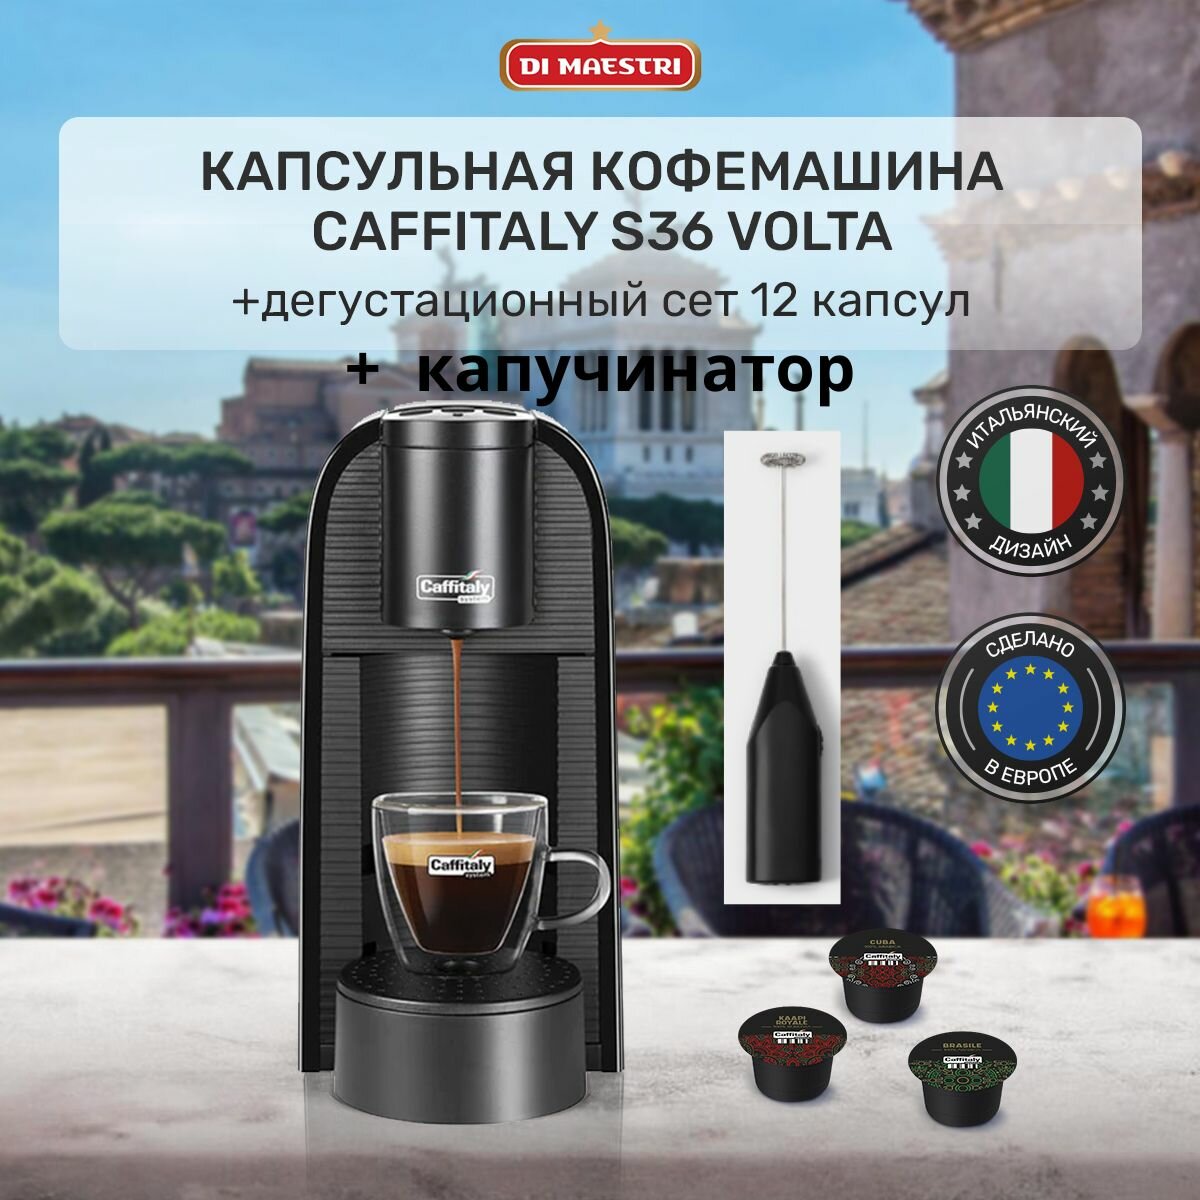 Кофемашина капсульная Volta S36 кофеварка + 12 капсул ассорти + капучинатор